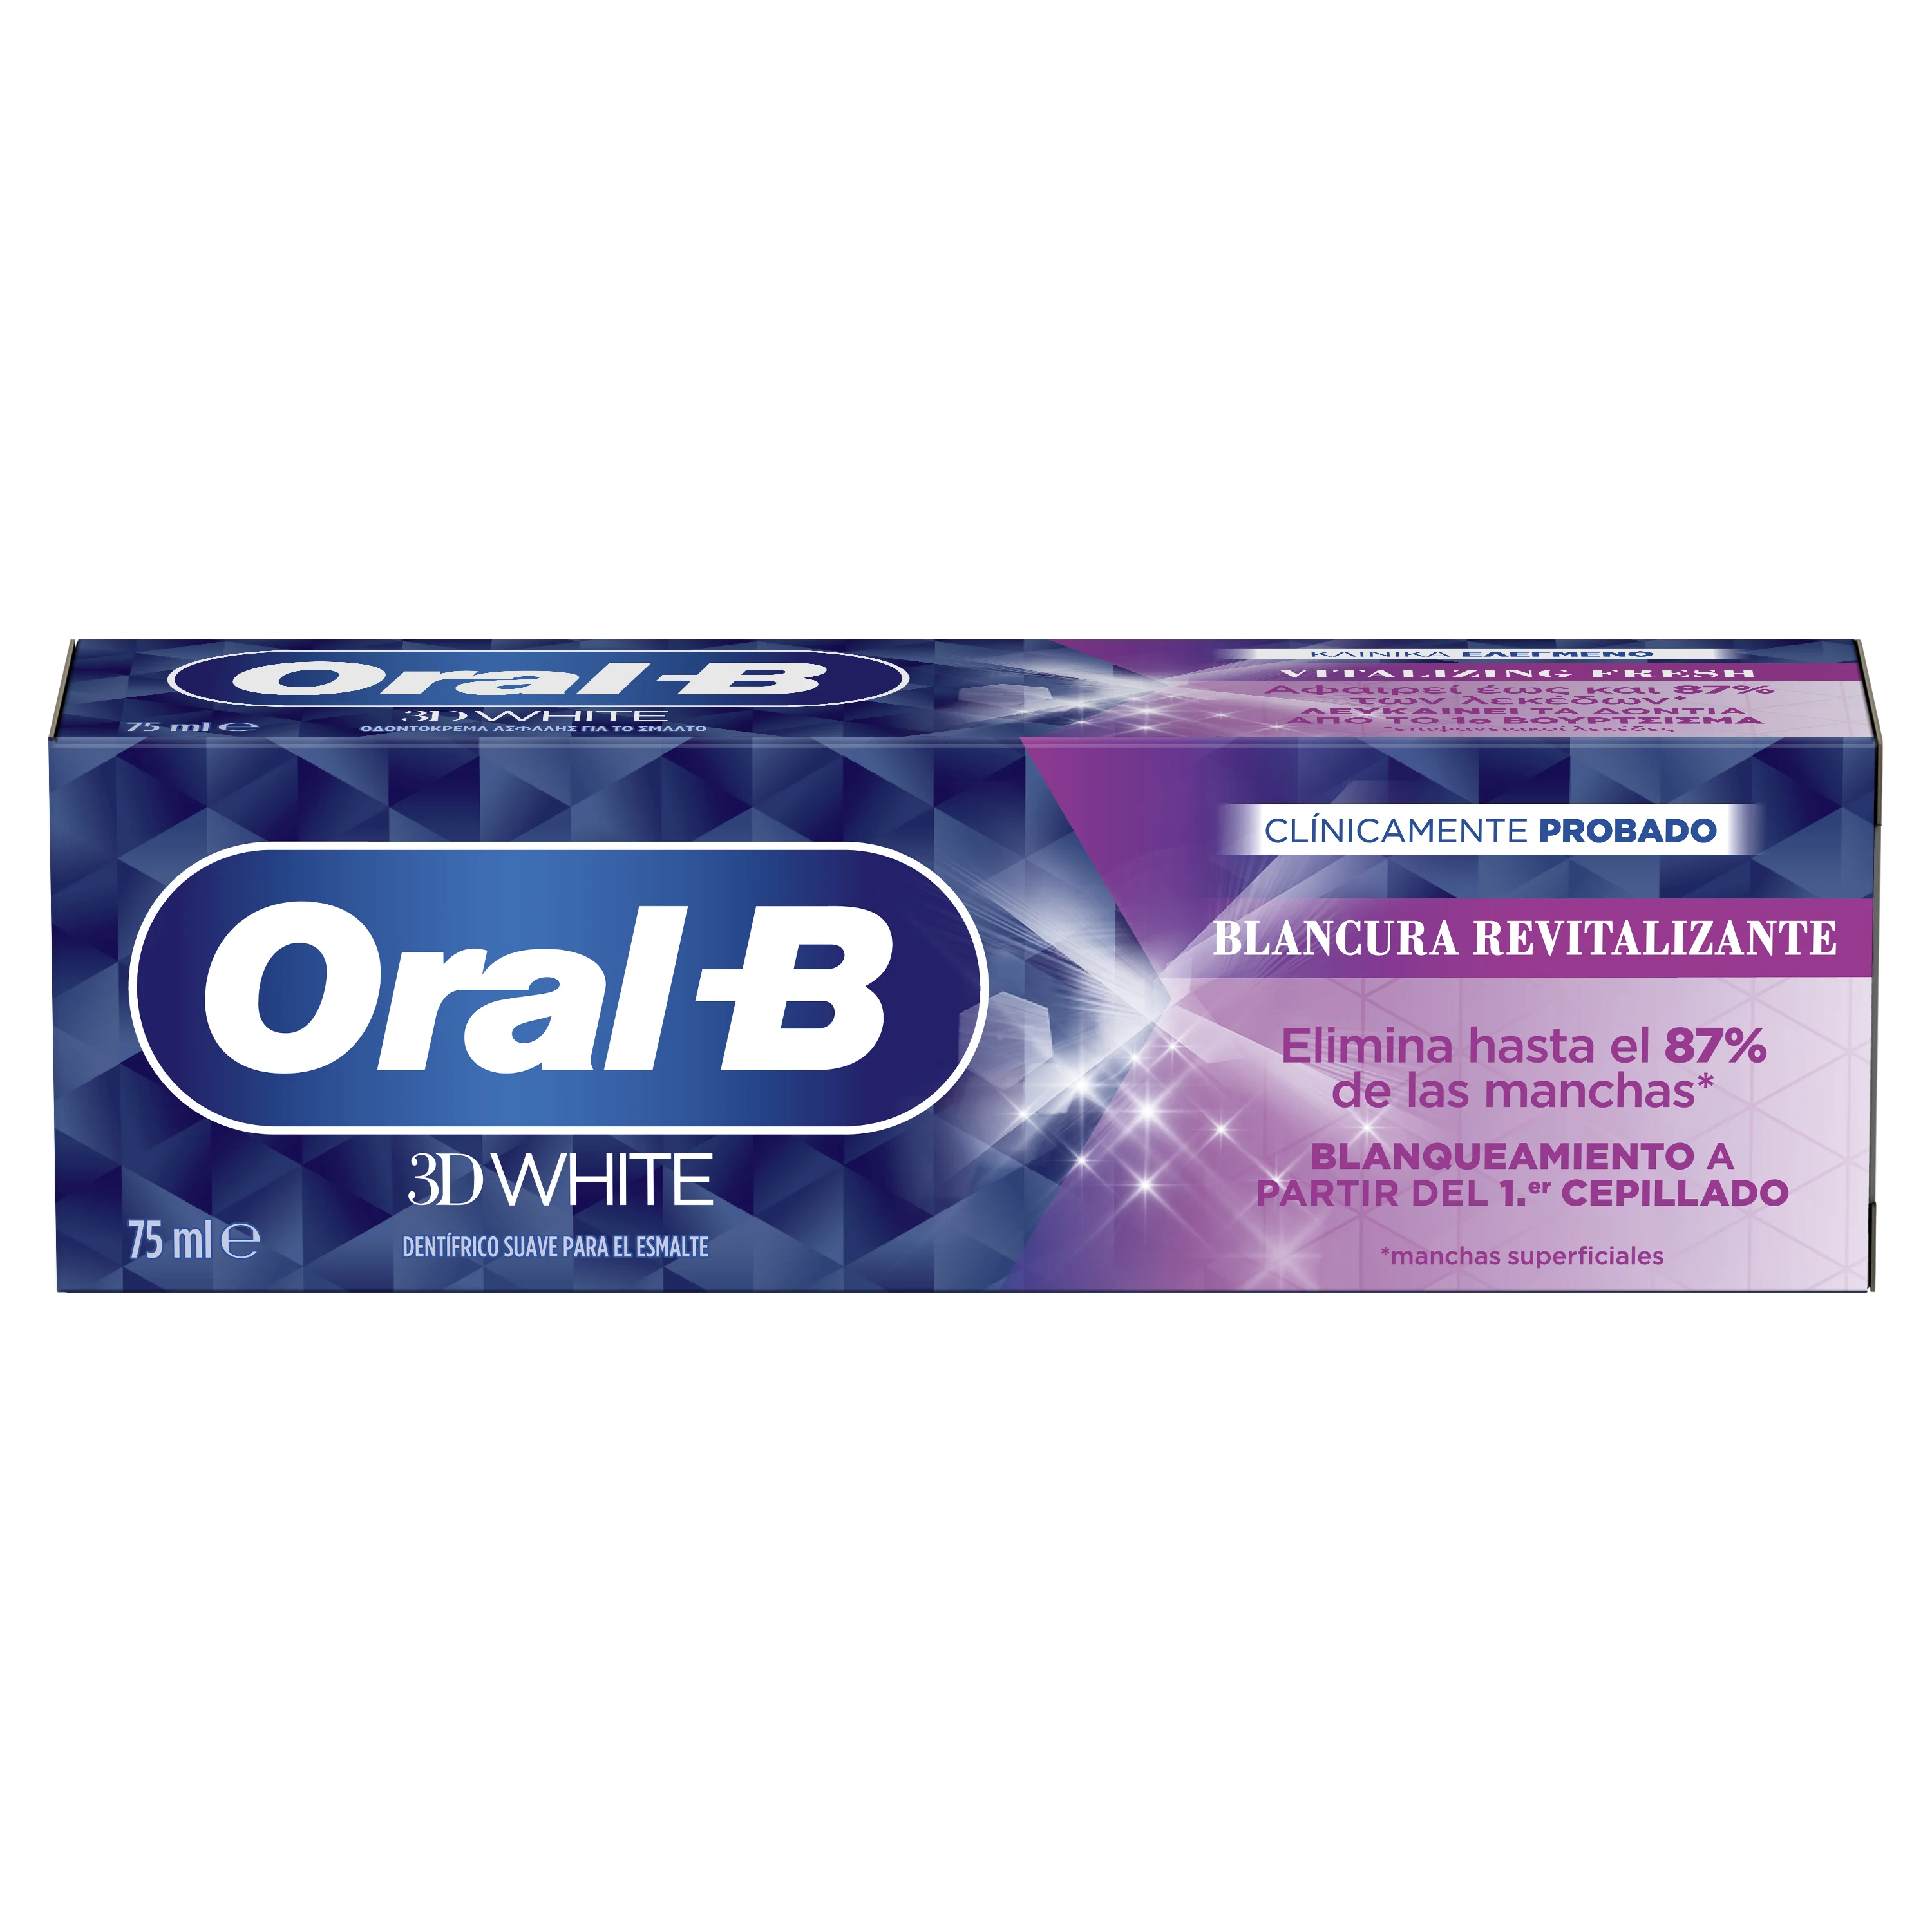 Oral-B 3D White Blancura Revitalizante undefined